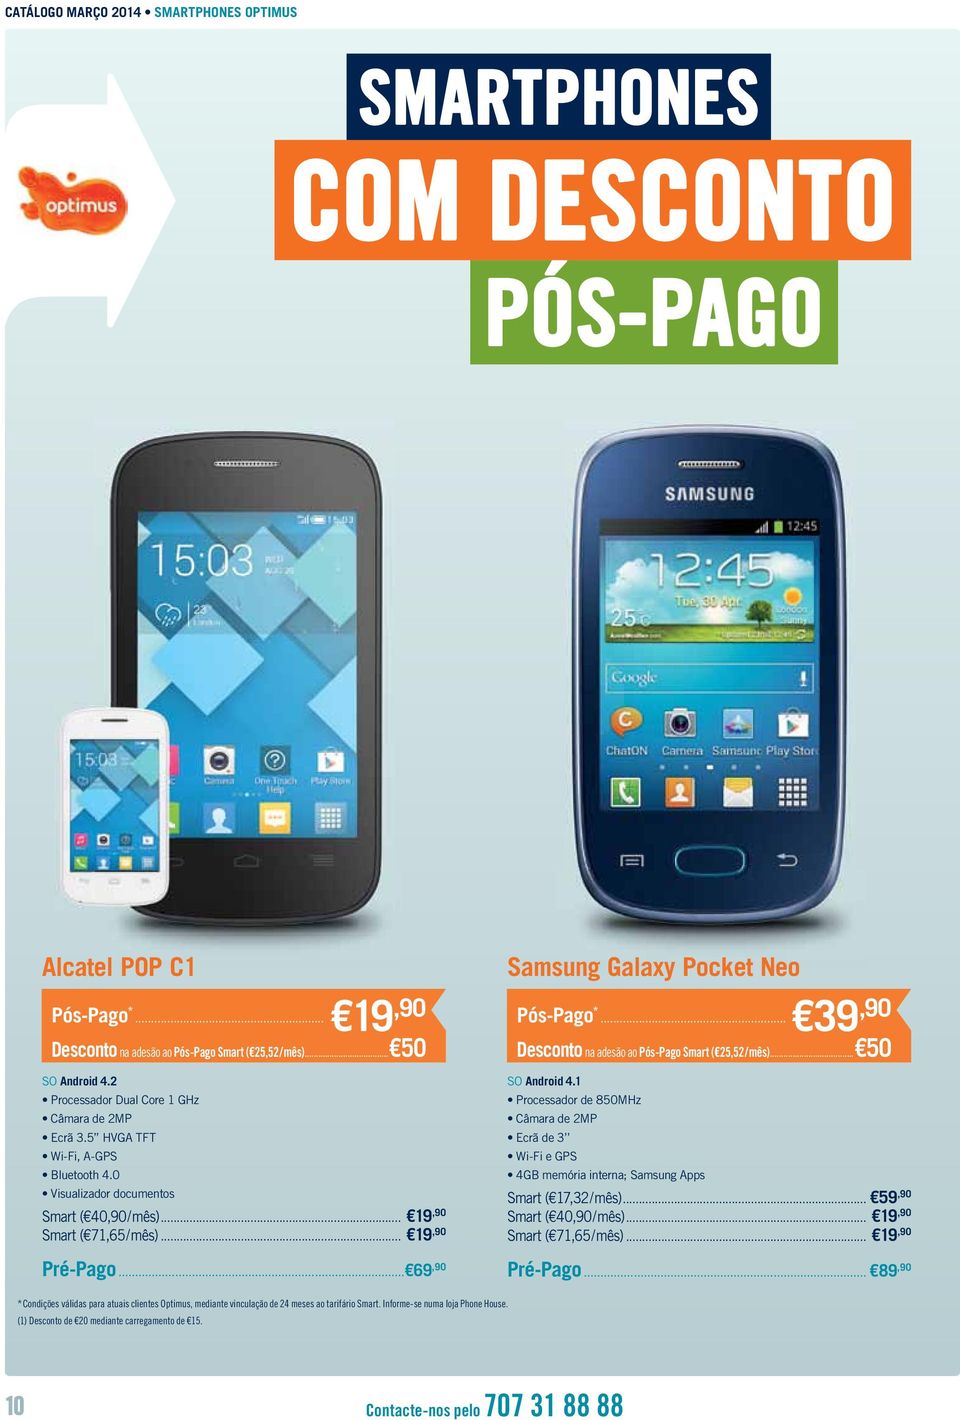 .. 69,90 Galaxy Pocket Neo Pós-Pago *... 39,90 Desconto na adesão ao Pós-Pago Smart ( 25,52 / mês)... 50 SO Android 4.